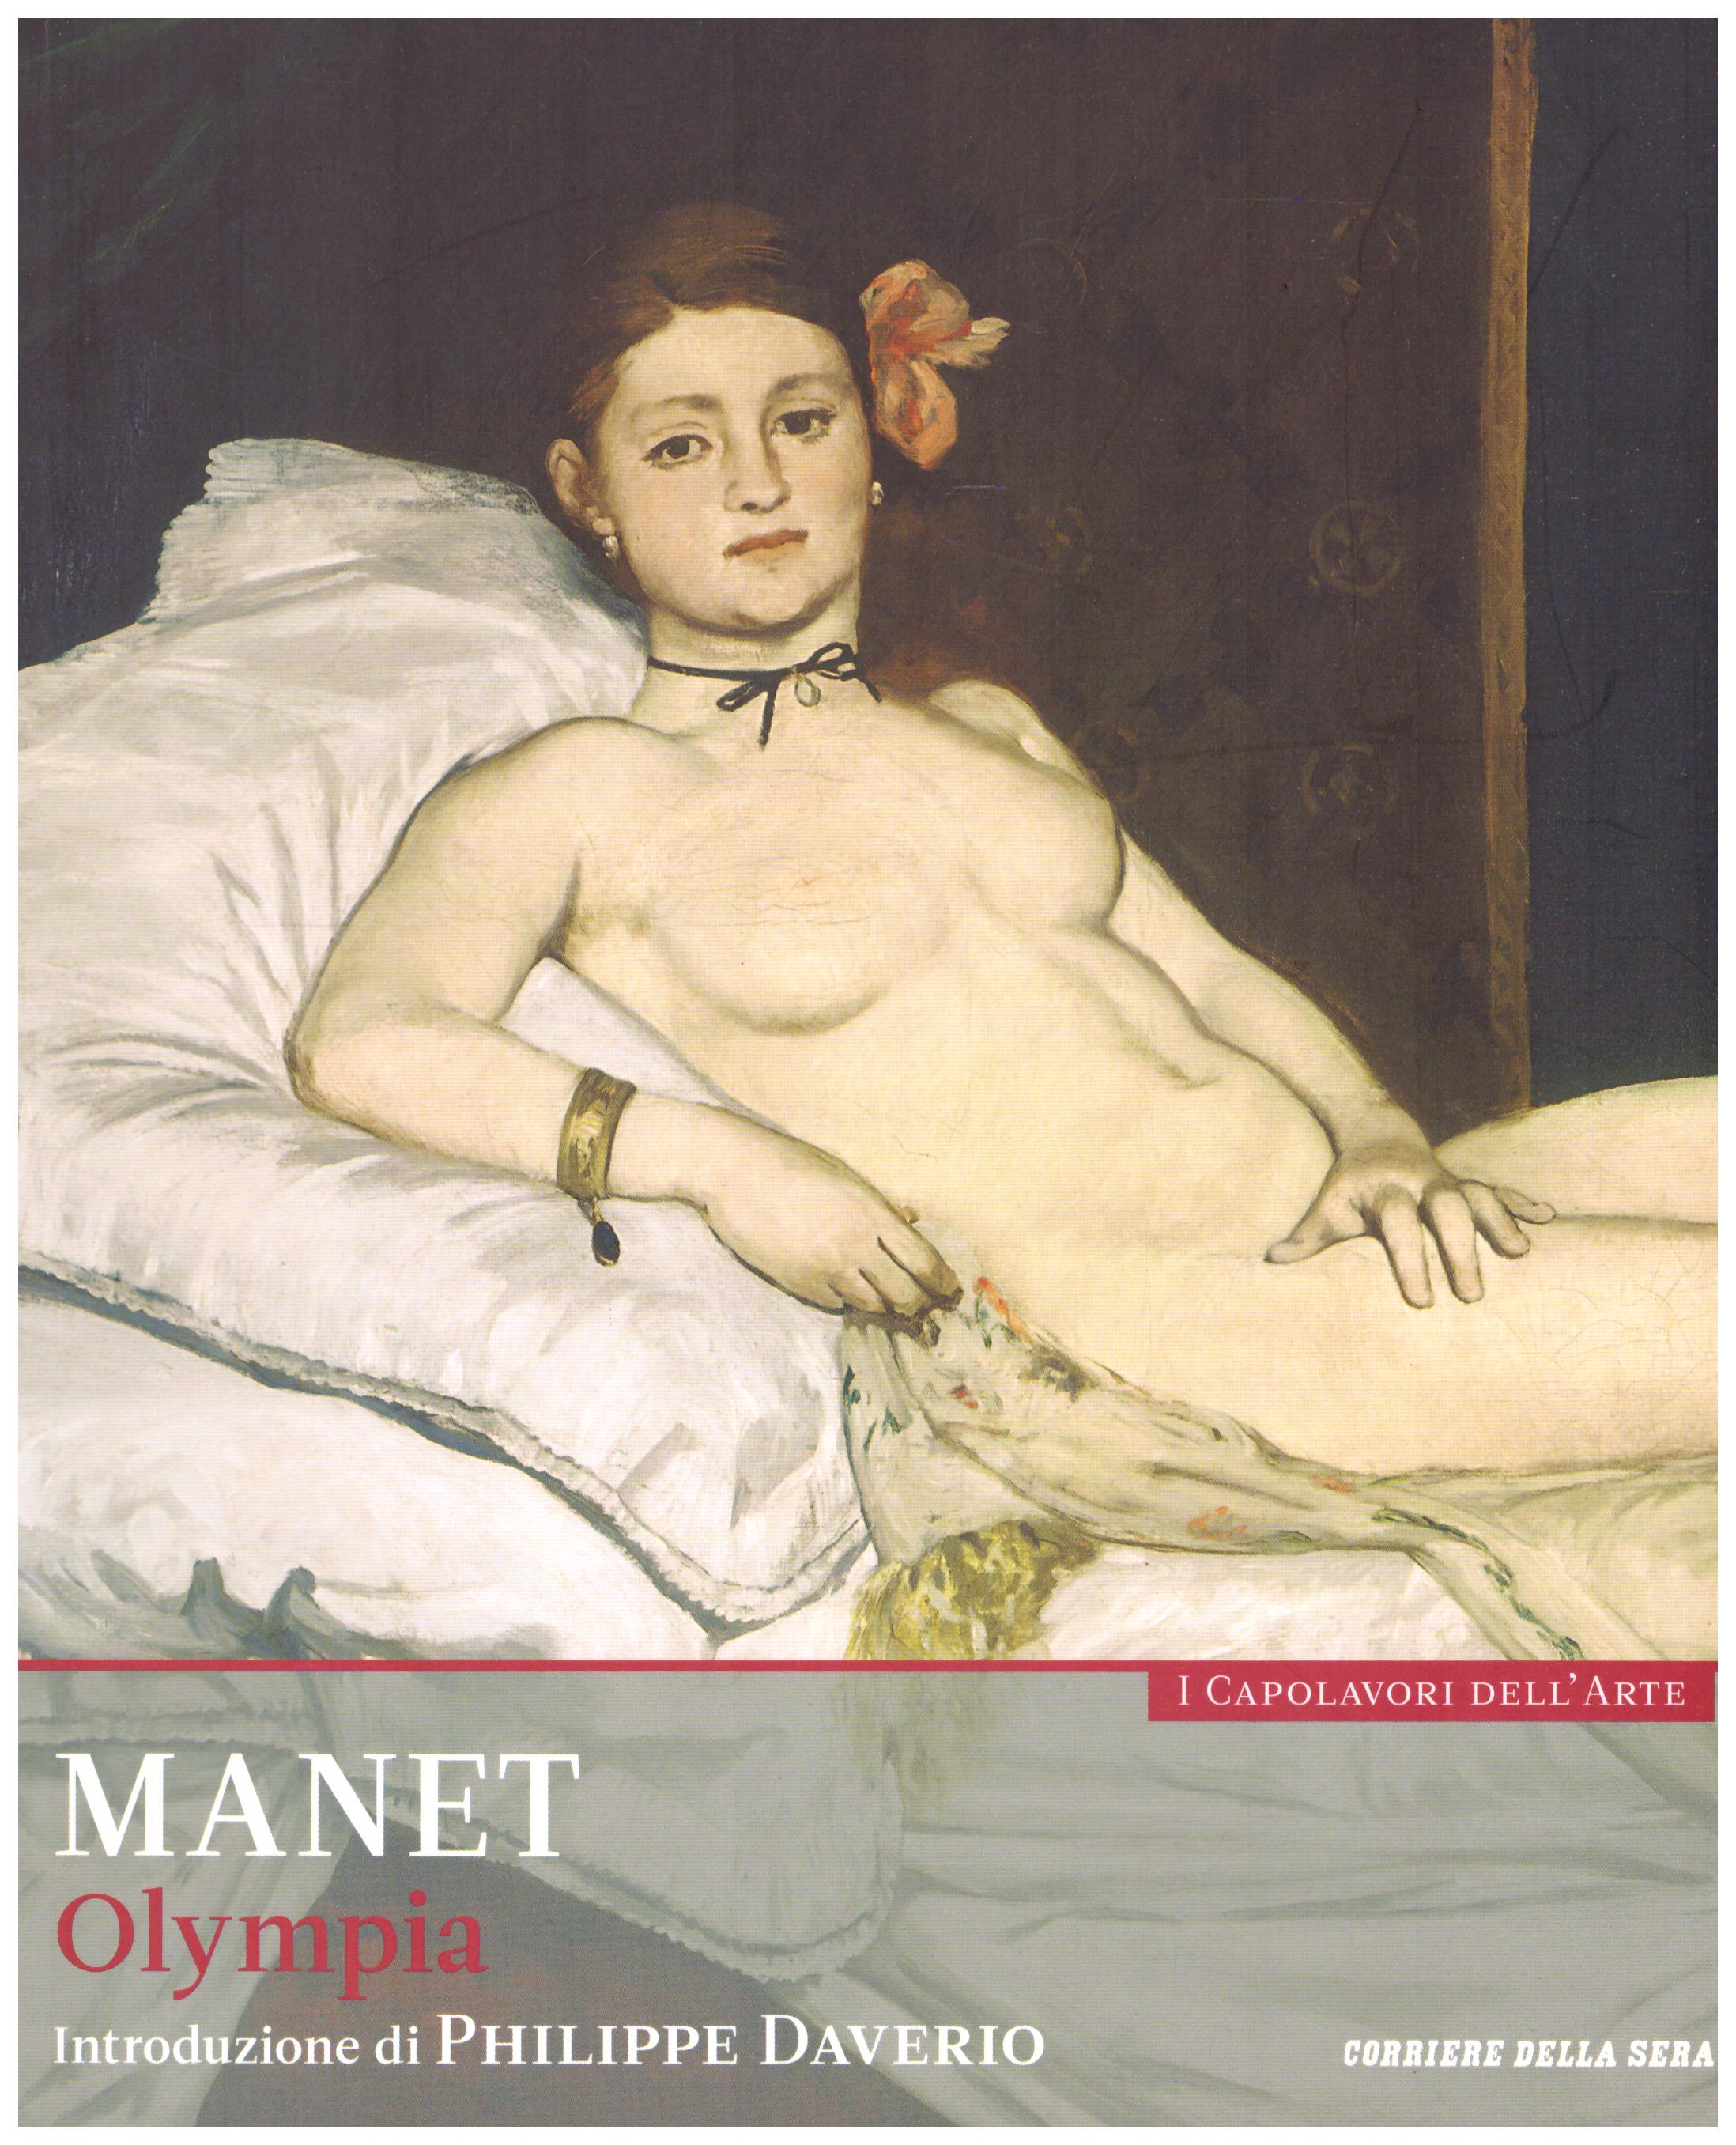 Titolo: I capolavori dell'arte, Manet  n.16  Autore : AA.VV.   Editore: education,it/corriere della sera, 2015